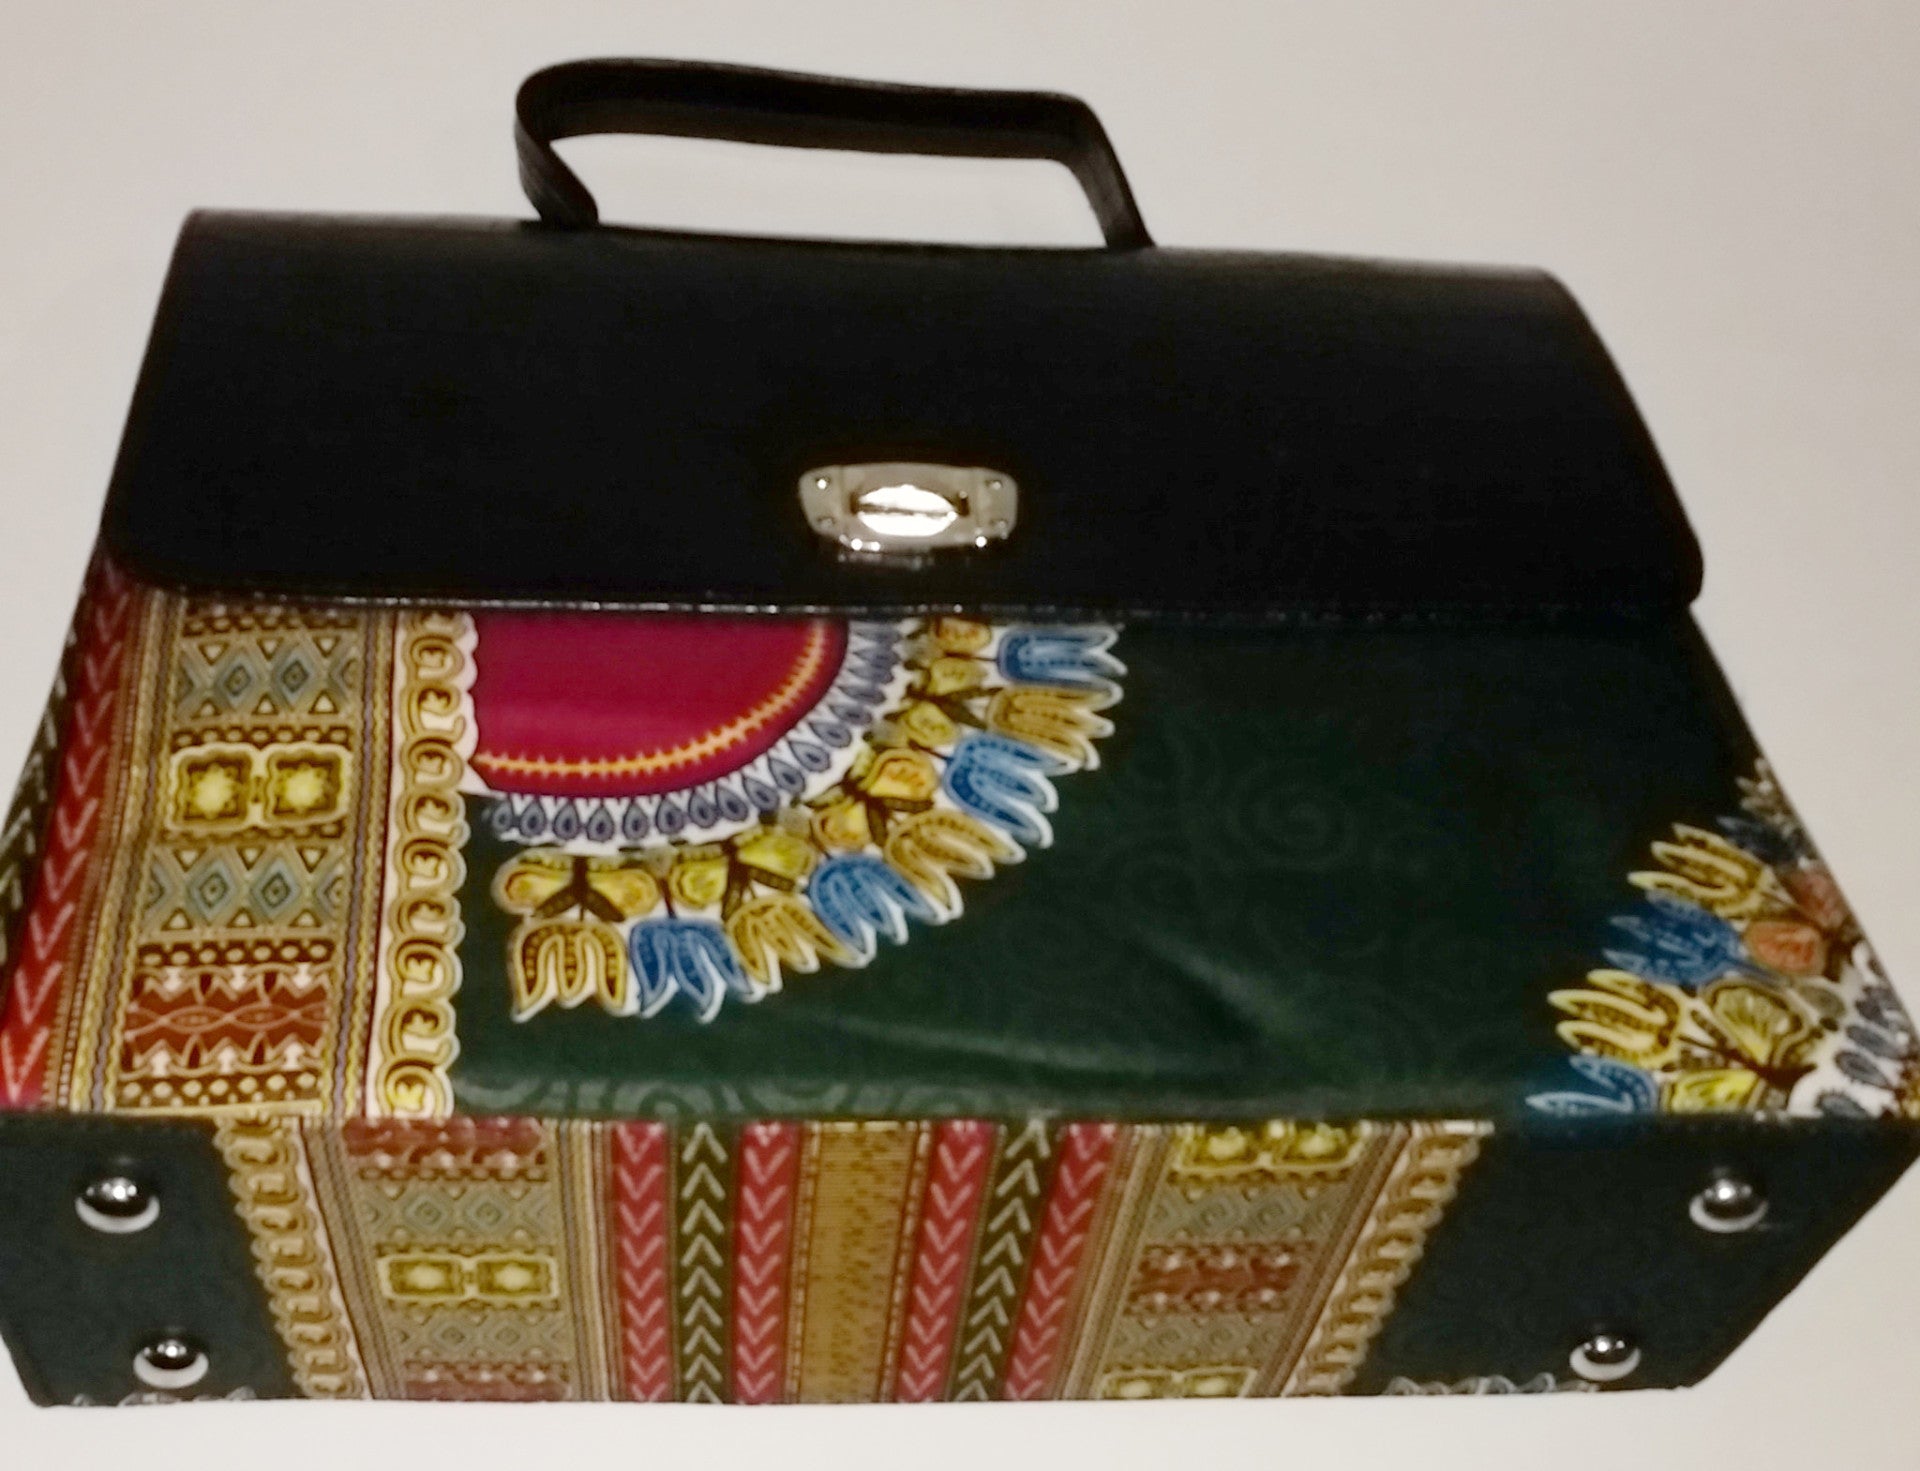 Ankara Handbag - Nubian Goods